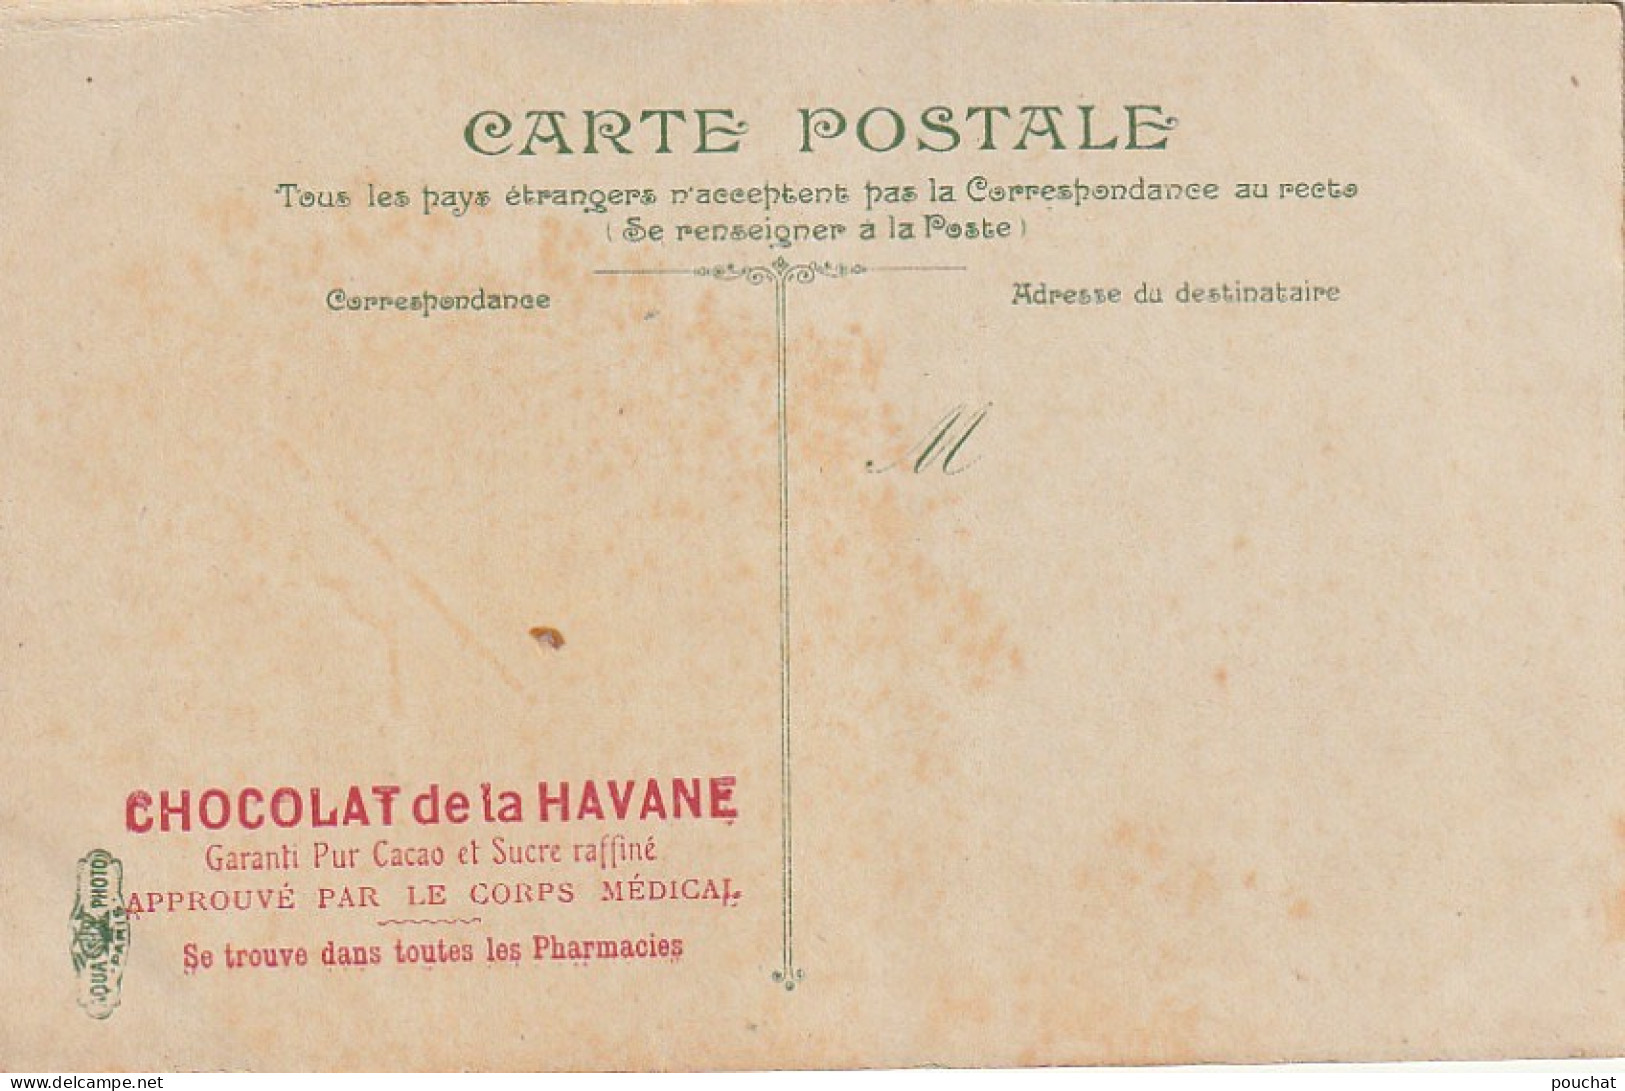 ALnw 1-(78) CARTE PUBLICITAIRE CHOCOLAT DE LA HAVANE - SAINT GERMAIN EN LAYE - L' ASCENCEUR - 2 SCANS - Publicité